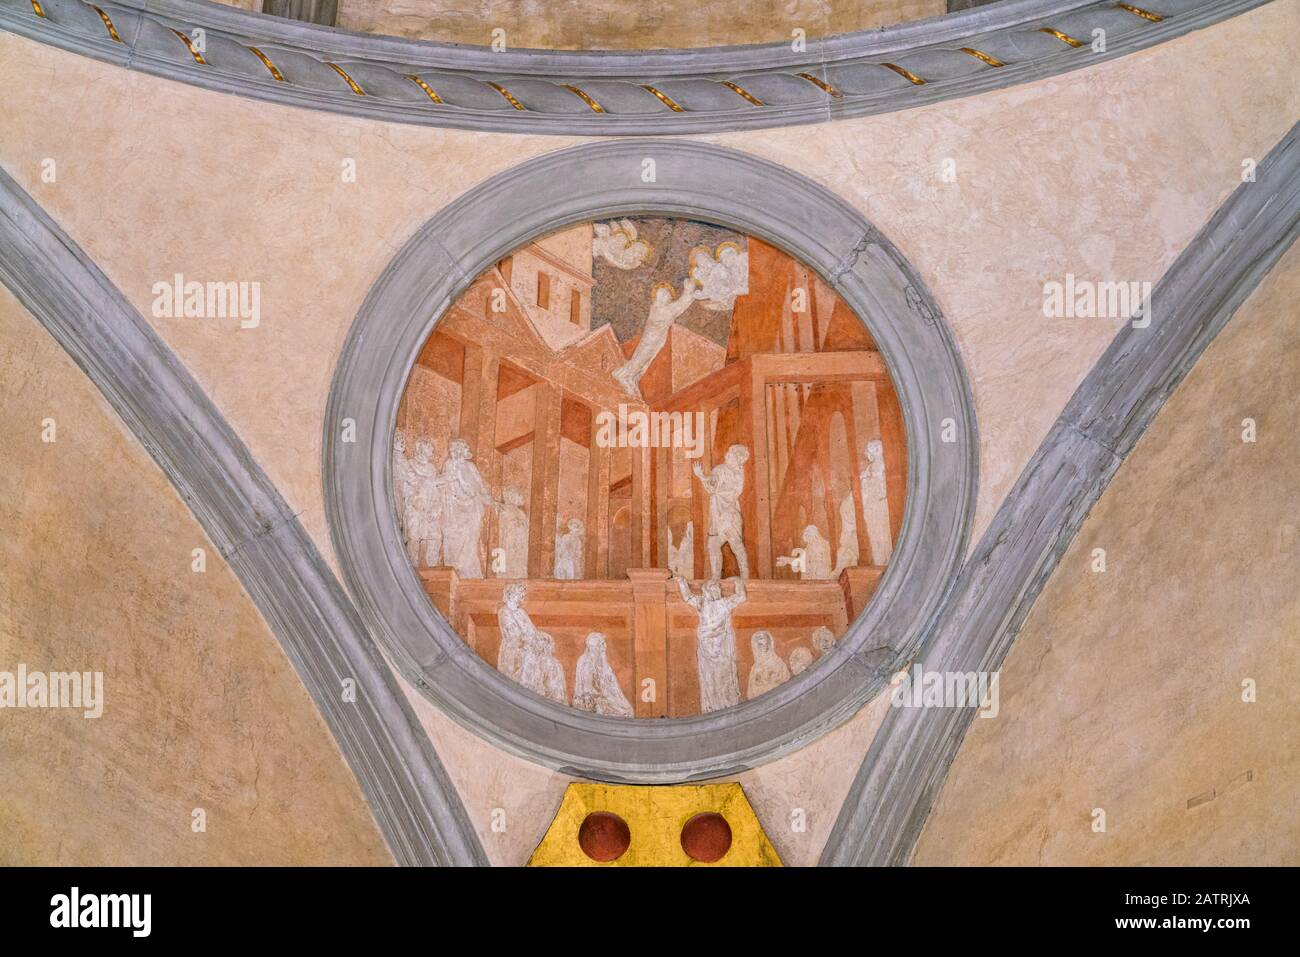 Evangelisten-Geschichten des Heiligen Johannes aus Donatello in der Sagrestia Vecchia im Sankt-Lorenz-Dom in Florenz. Toskana, Italien. Stockfoto